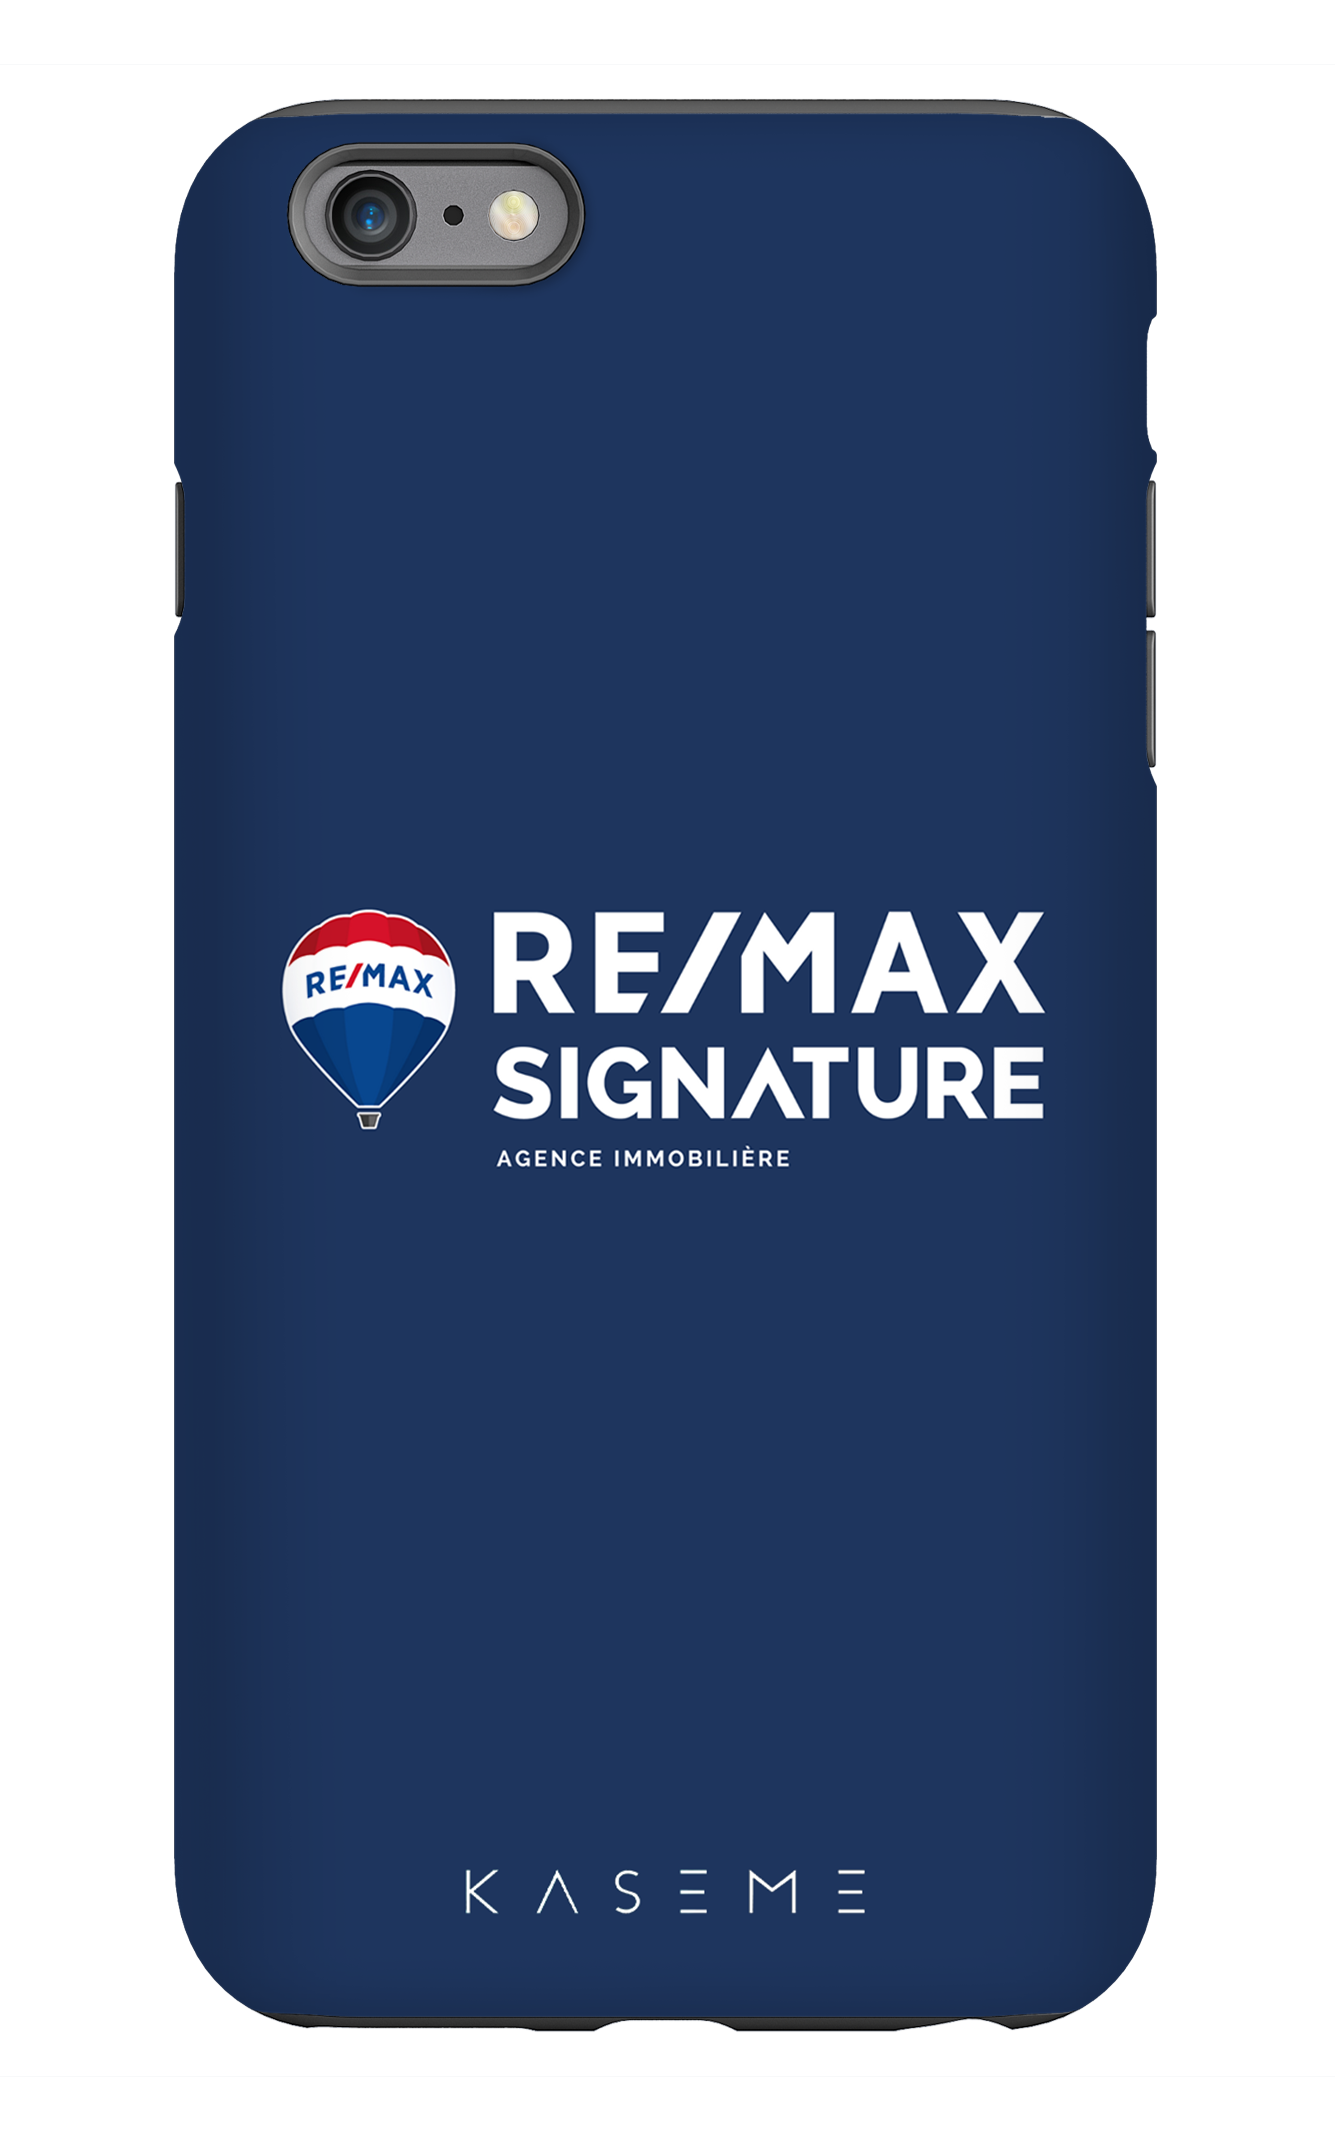 Remax Signature Bleu - iPhone 6/6s Plus